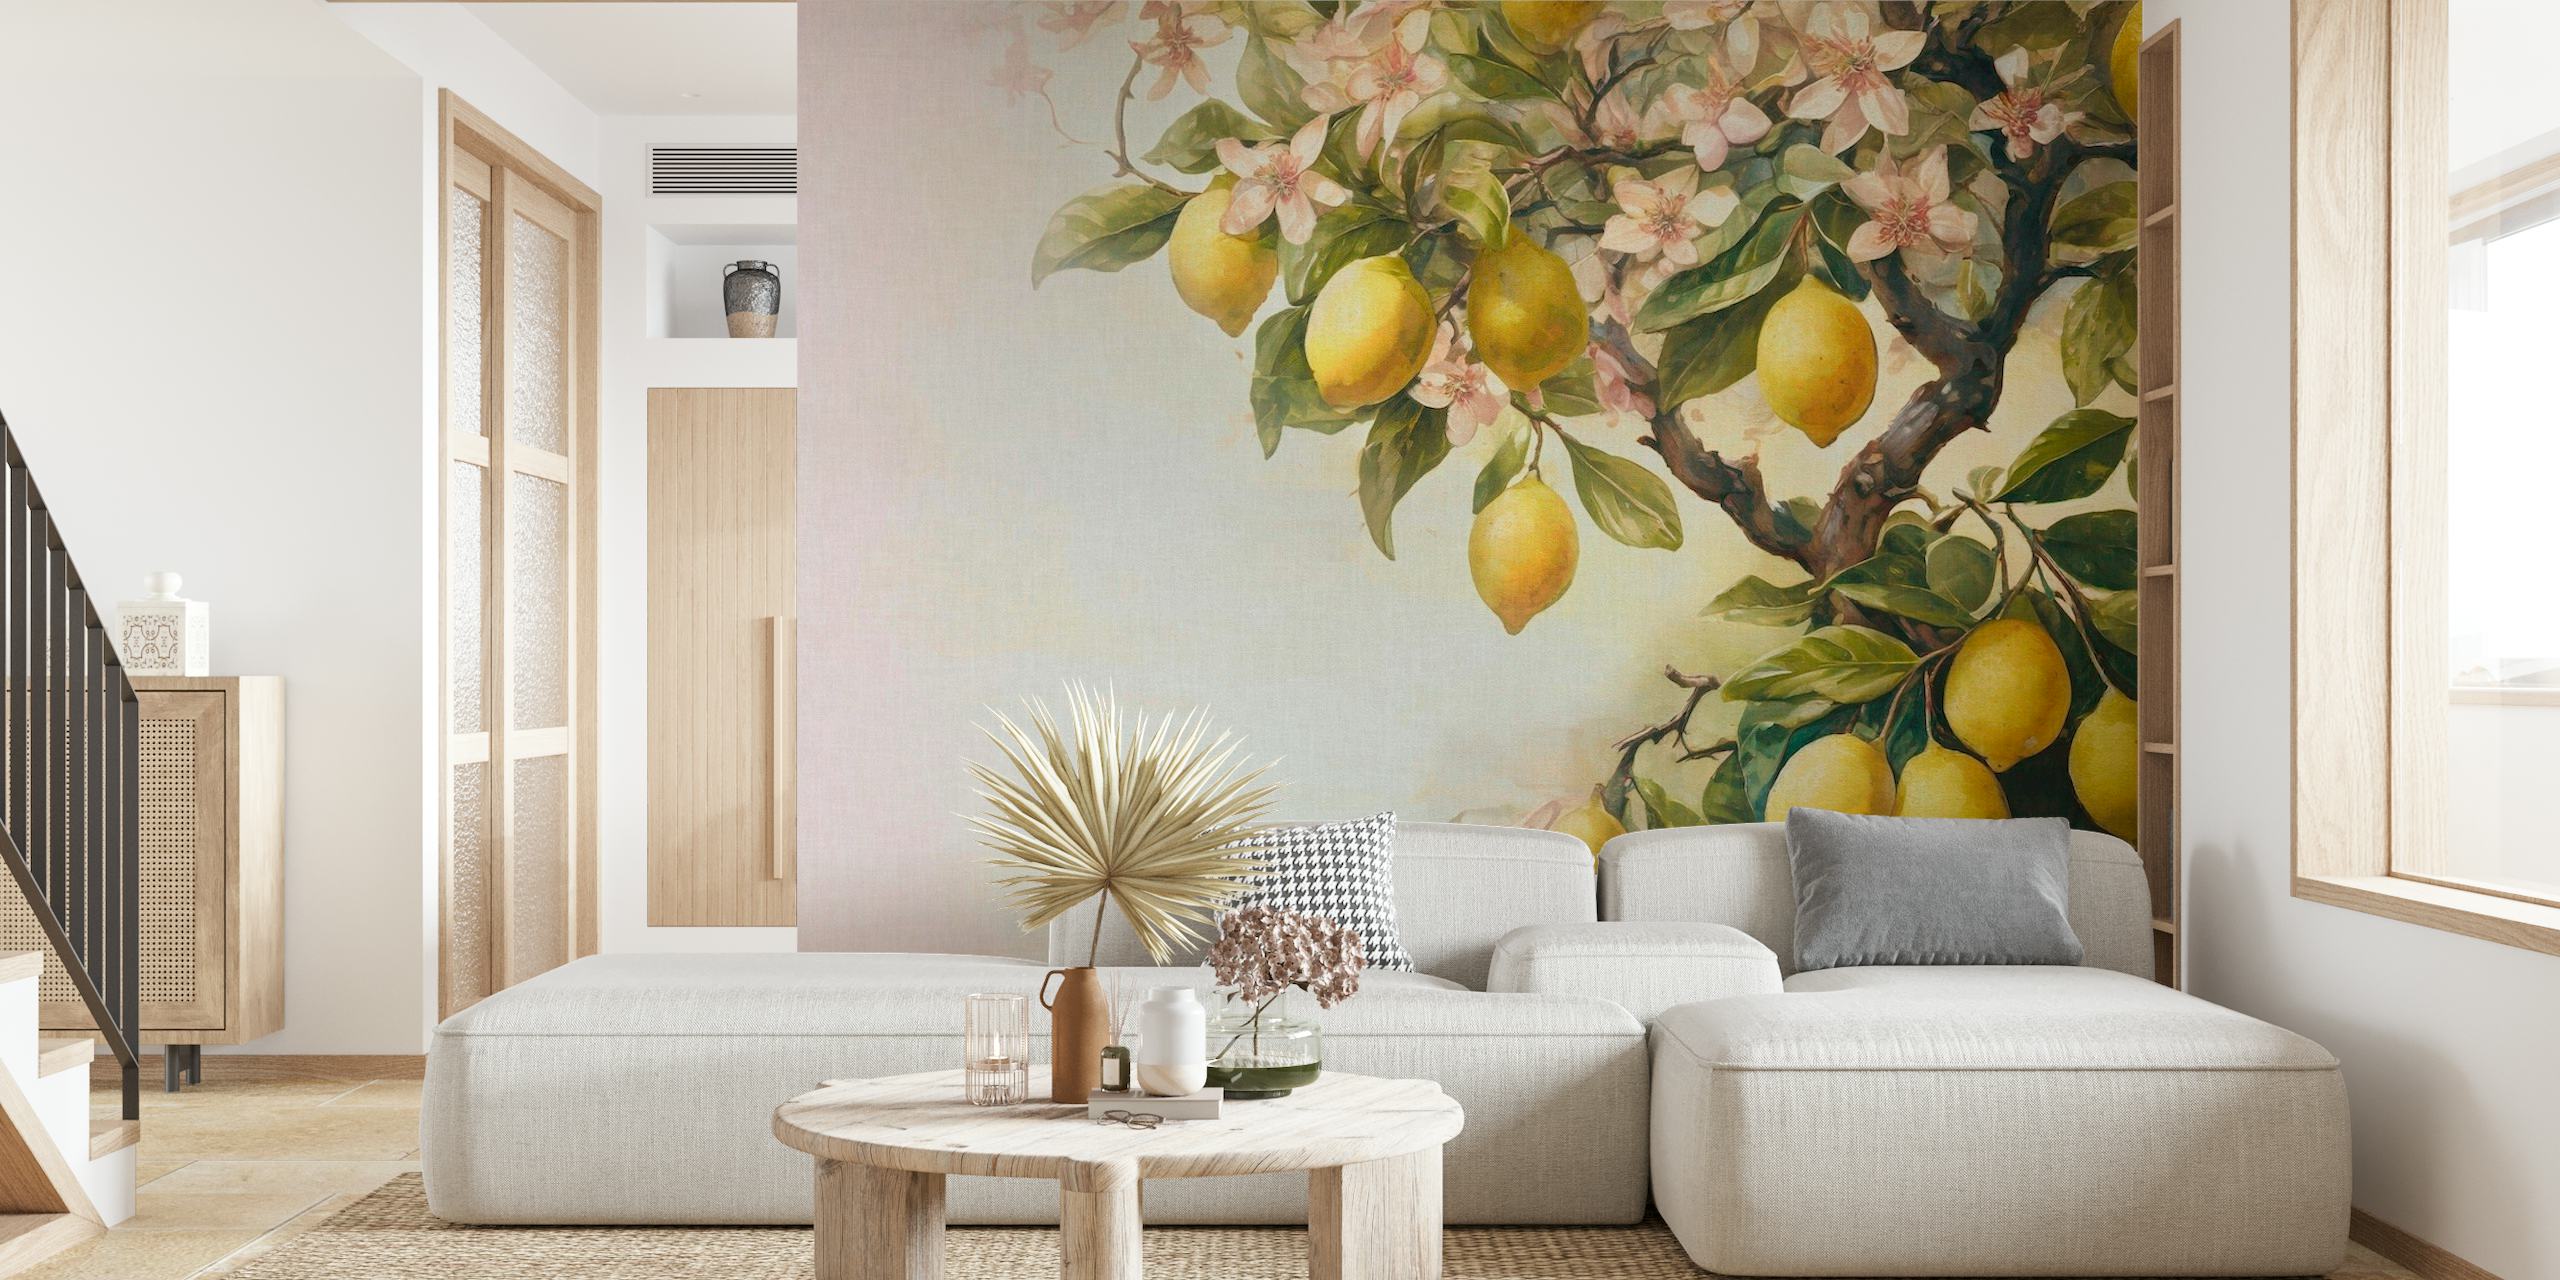 Seinämaalaus sitruunapuusta, kypsiä sitruunoita ja kukkia pehmeissä vintage-sävyissä